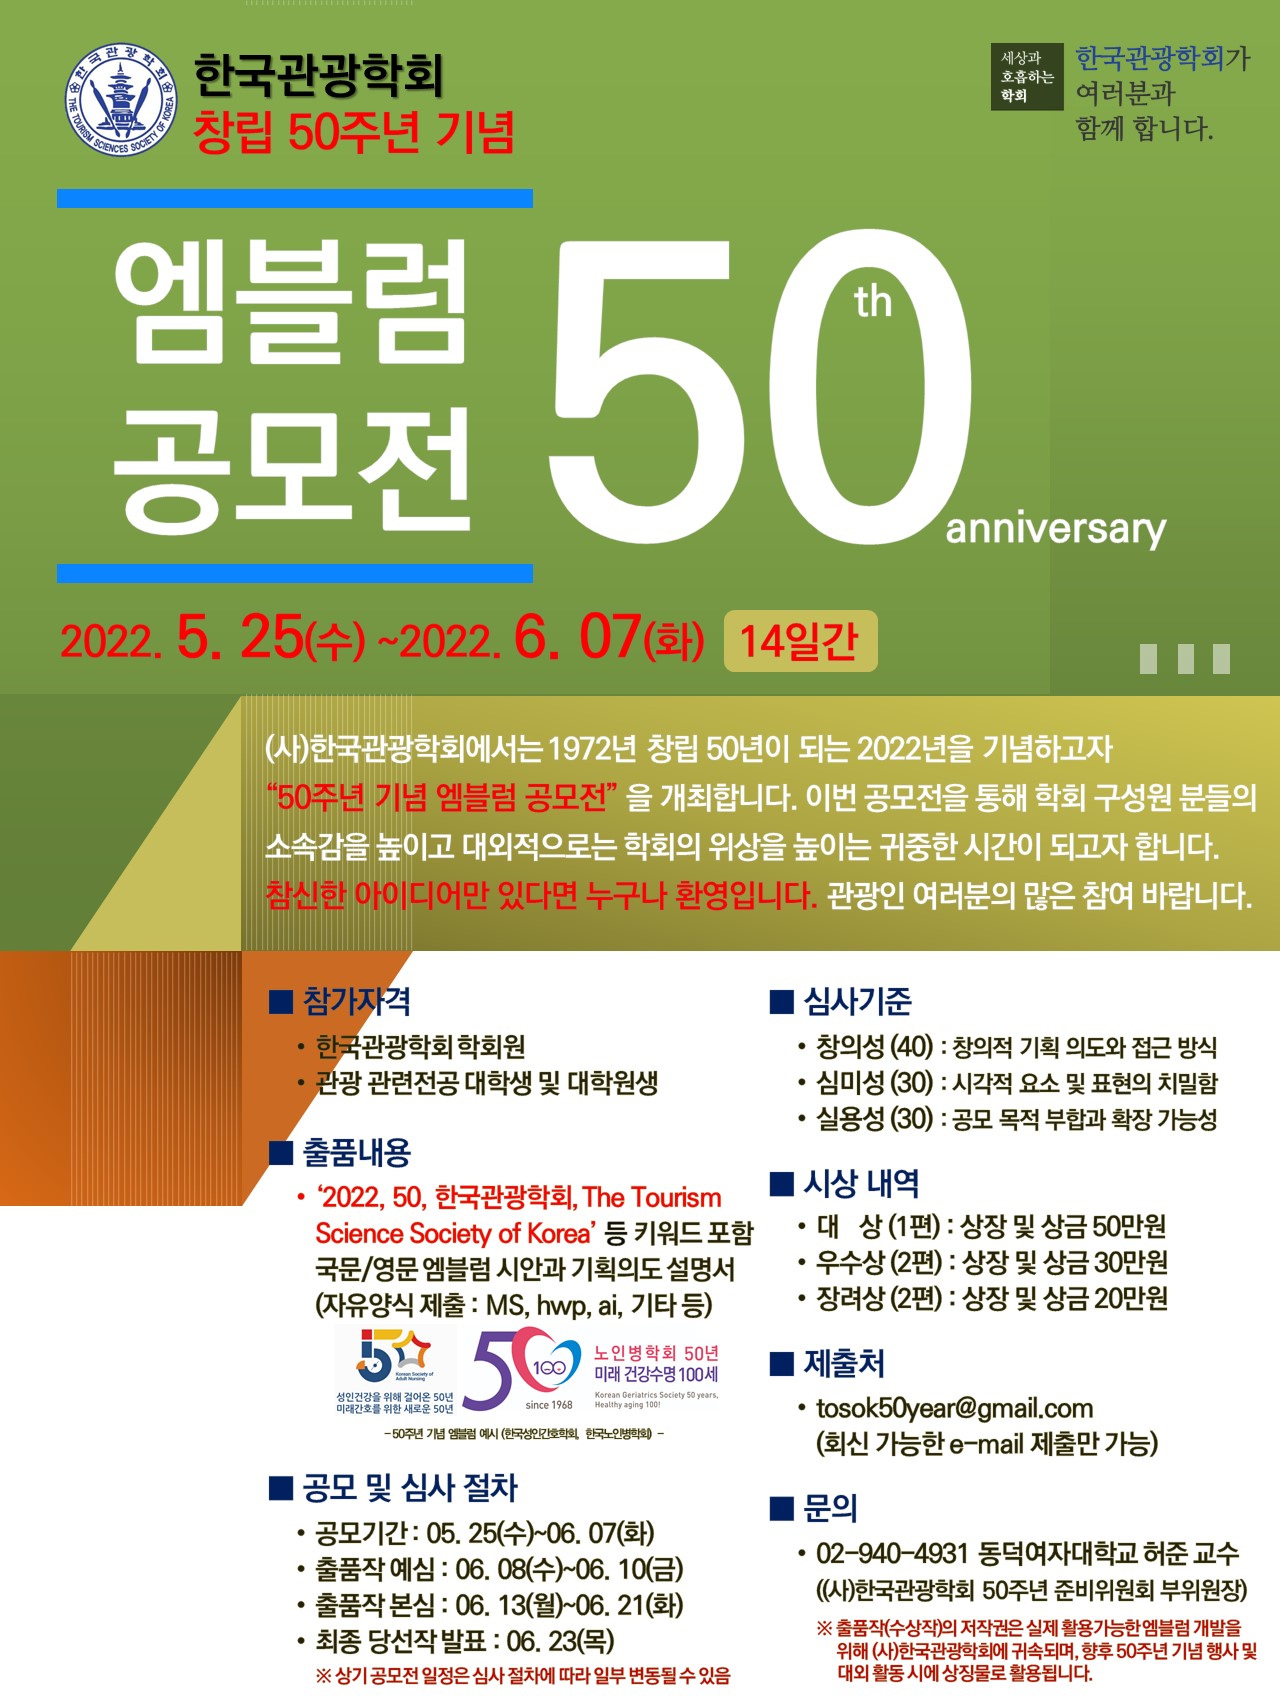 한국관광학회 창립 50주년 기념 엠블럼 공모전